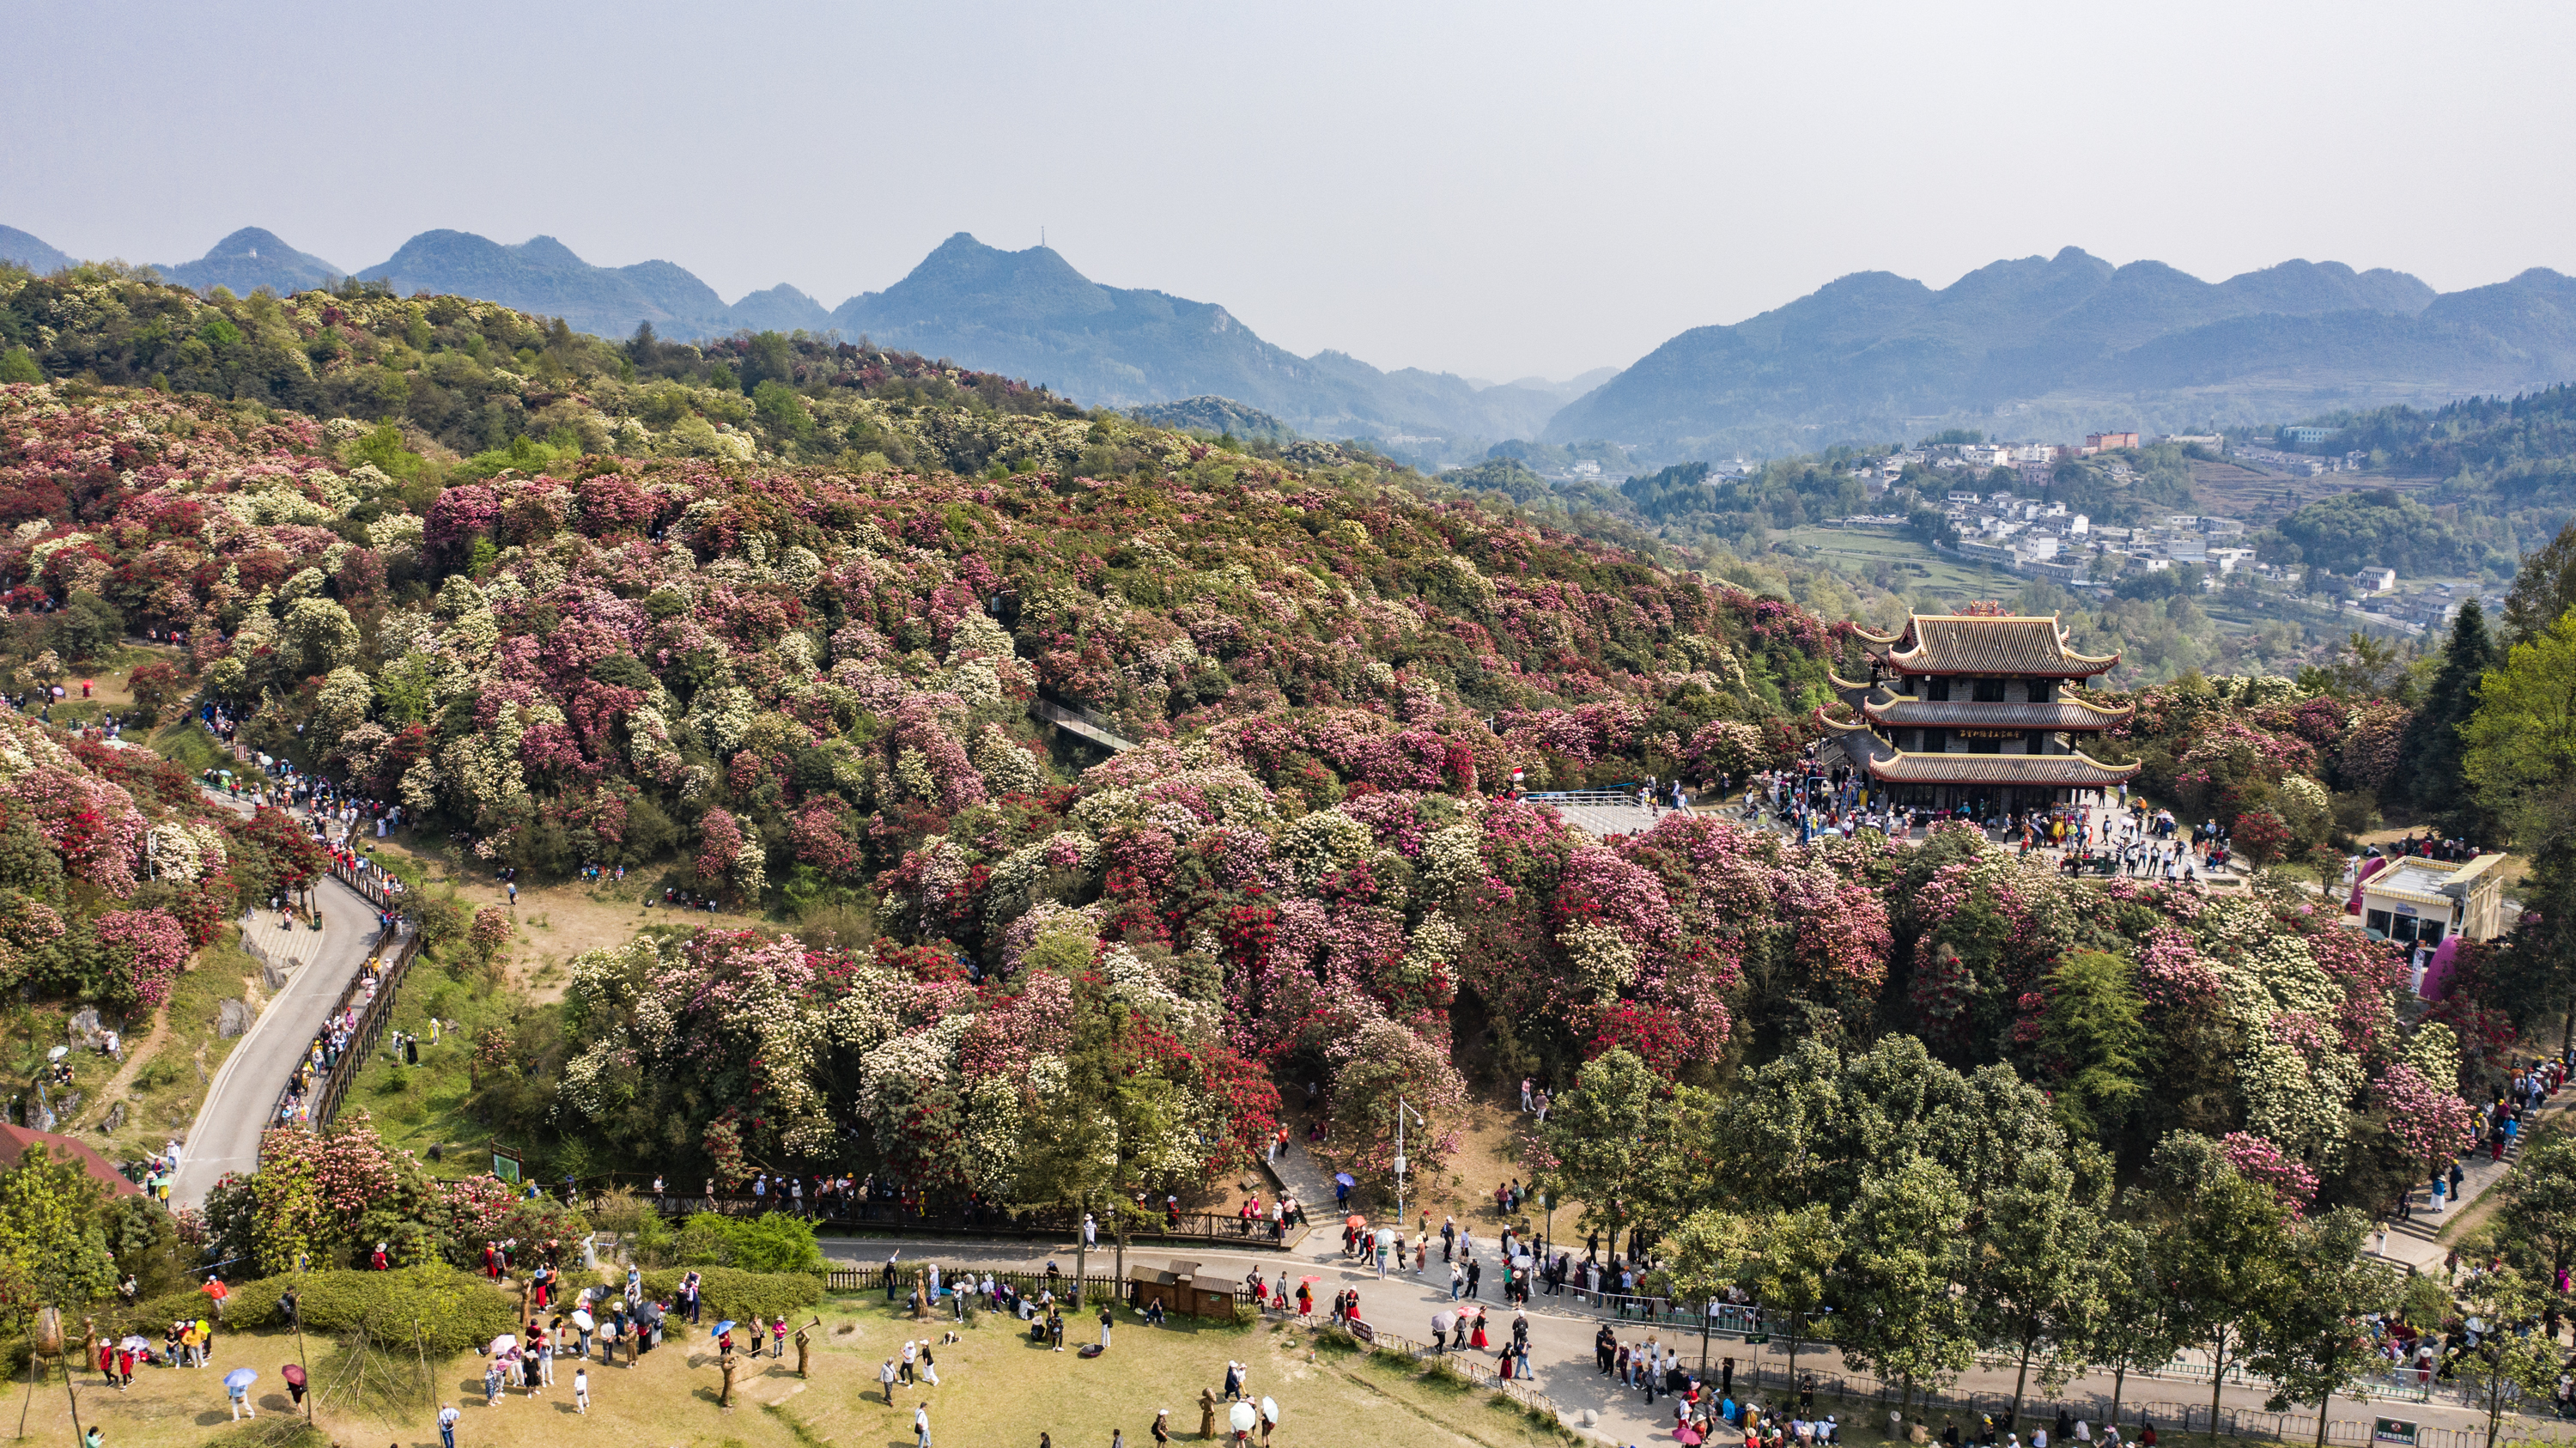 游客在百里杜鹃景区观赏杜鹃花（无人机照片）。新华社记者 陶亮 摄